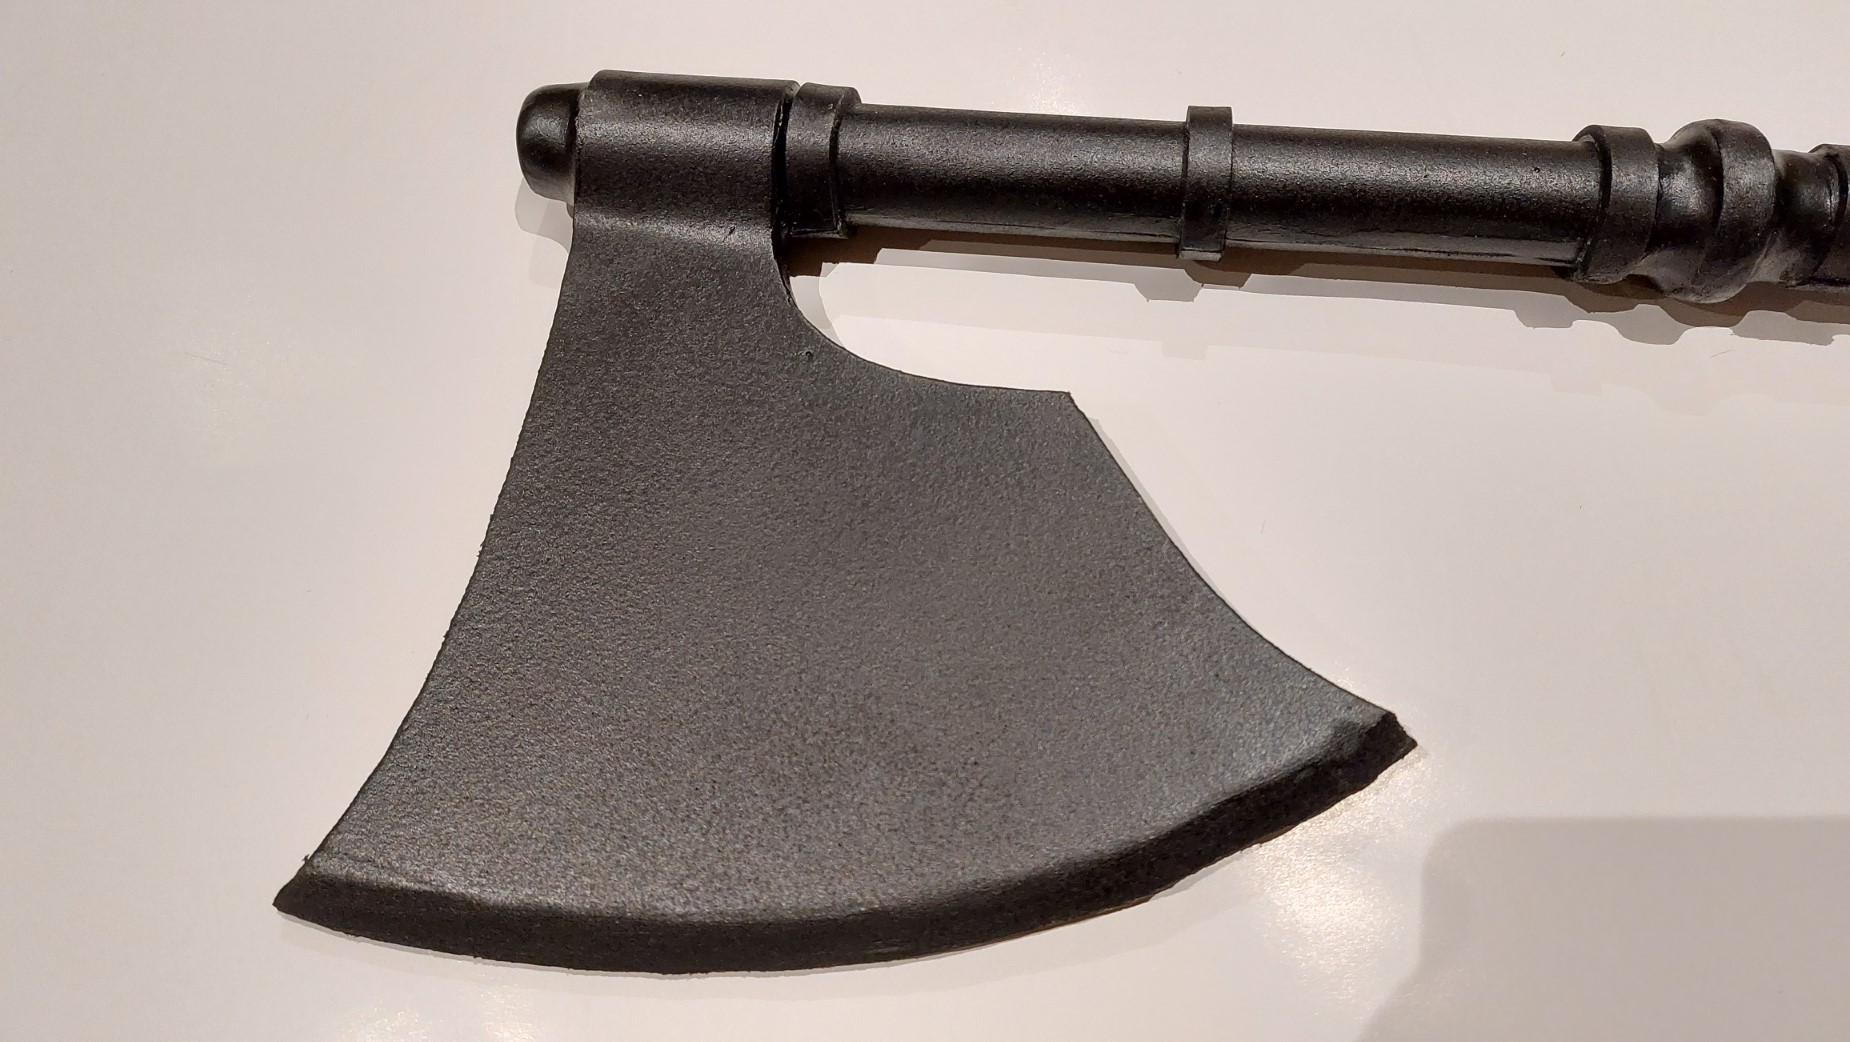 Blade of the axe